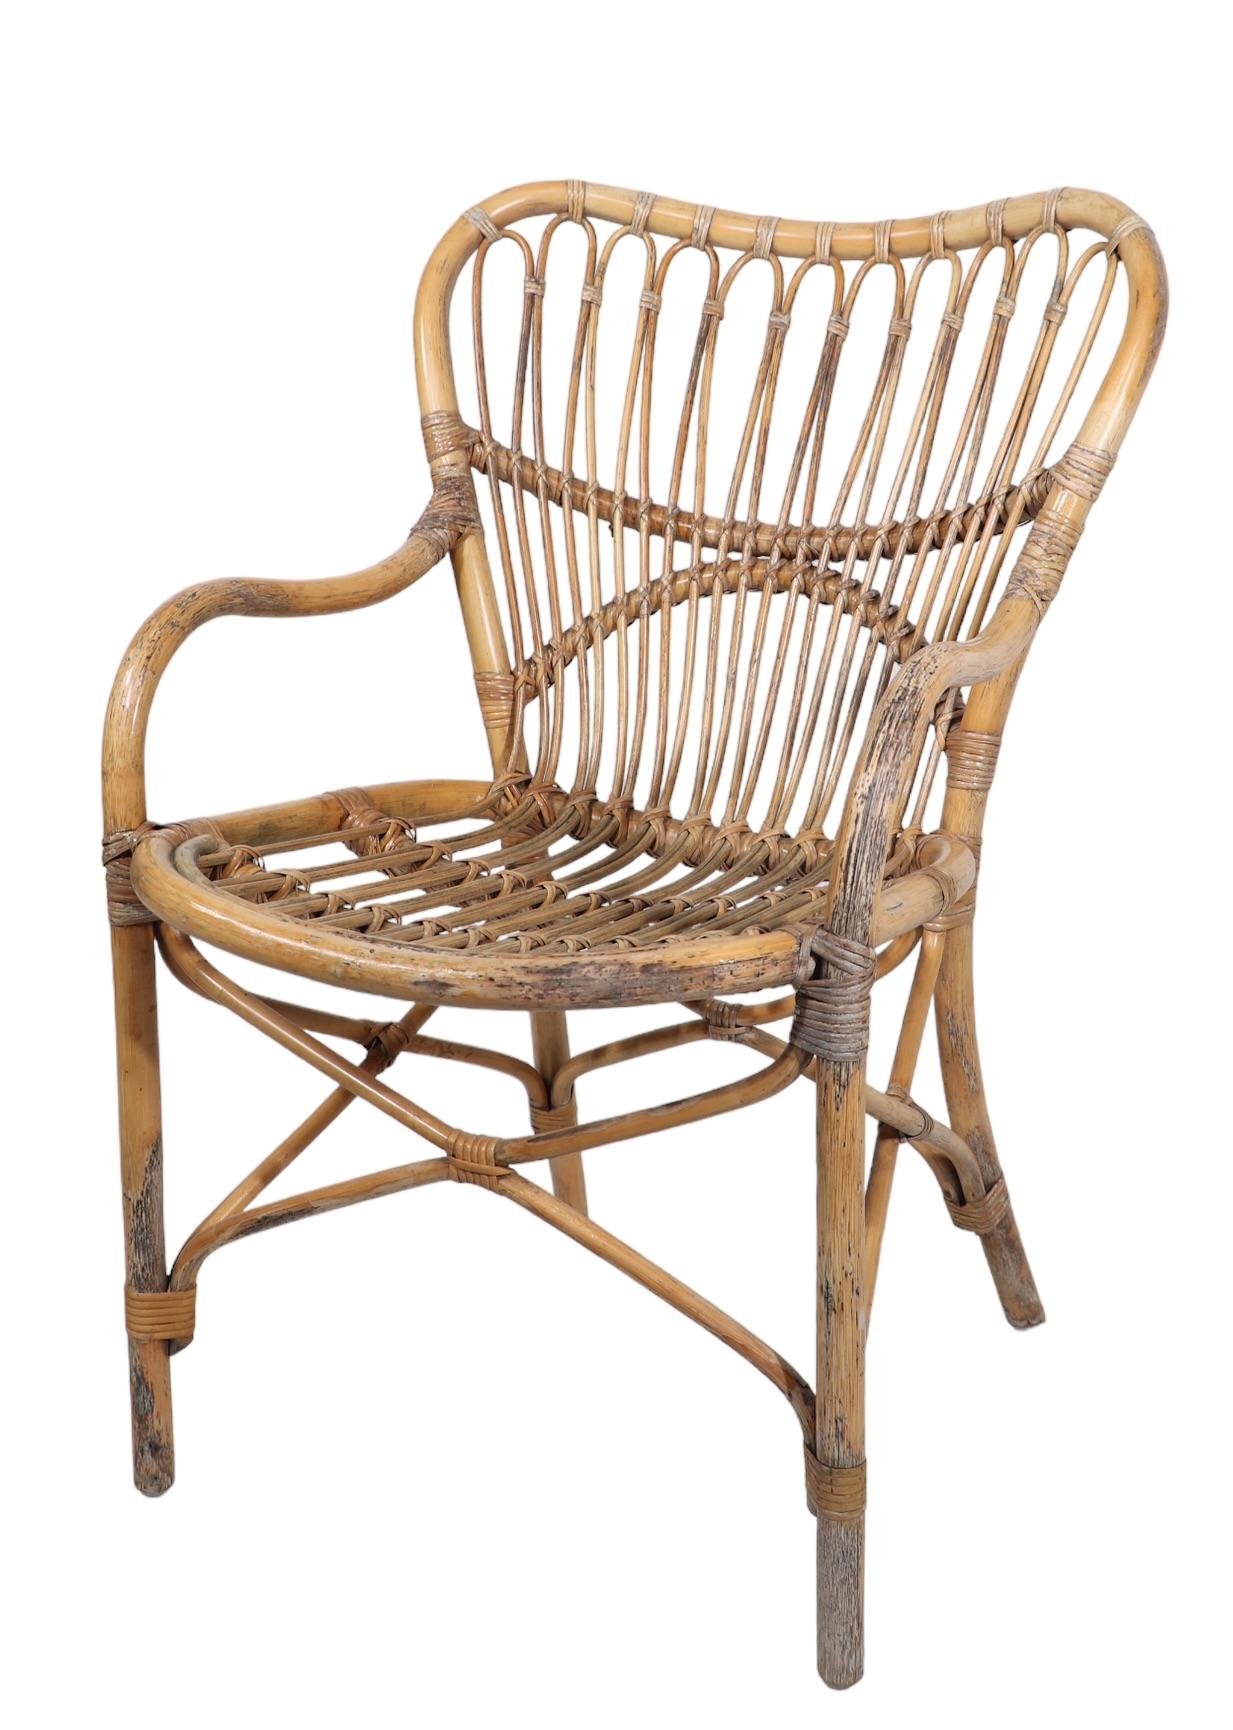 Chaise d'appoint chic, élégante et sophistiquée en bambou et rotin, fabriquée en Italie, vers les années 1950/1960, dans le style de Franco Albini et Vittorio Bonaccina. Cet exemplaire est en bon état d'origine, structurellement sain et robuste, la